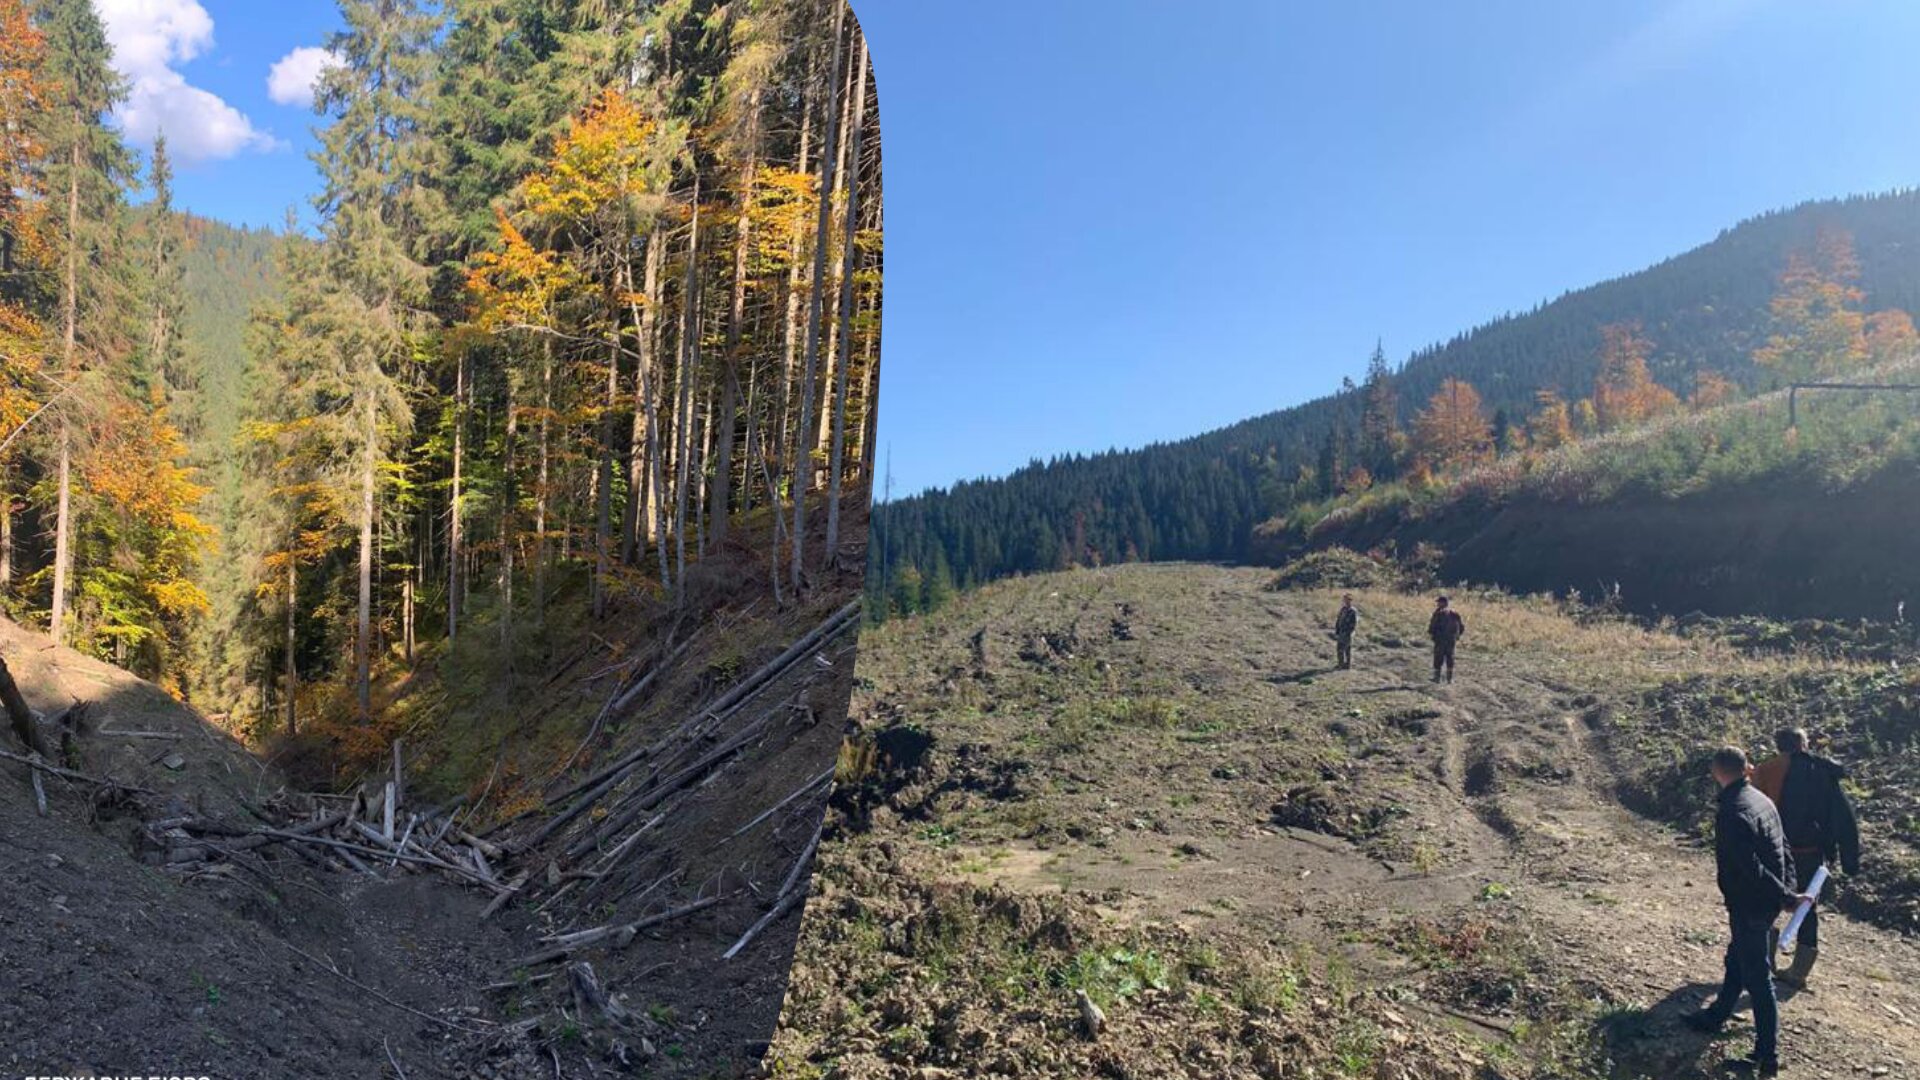 ДБР викрило злочинну групу лісників, яка незаконно рубала дерева на території Національного парку «Гуцульщина» загальнодержавного значення.
